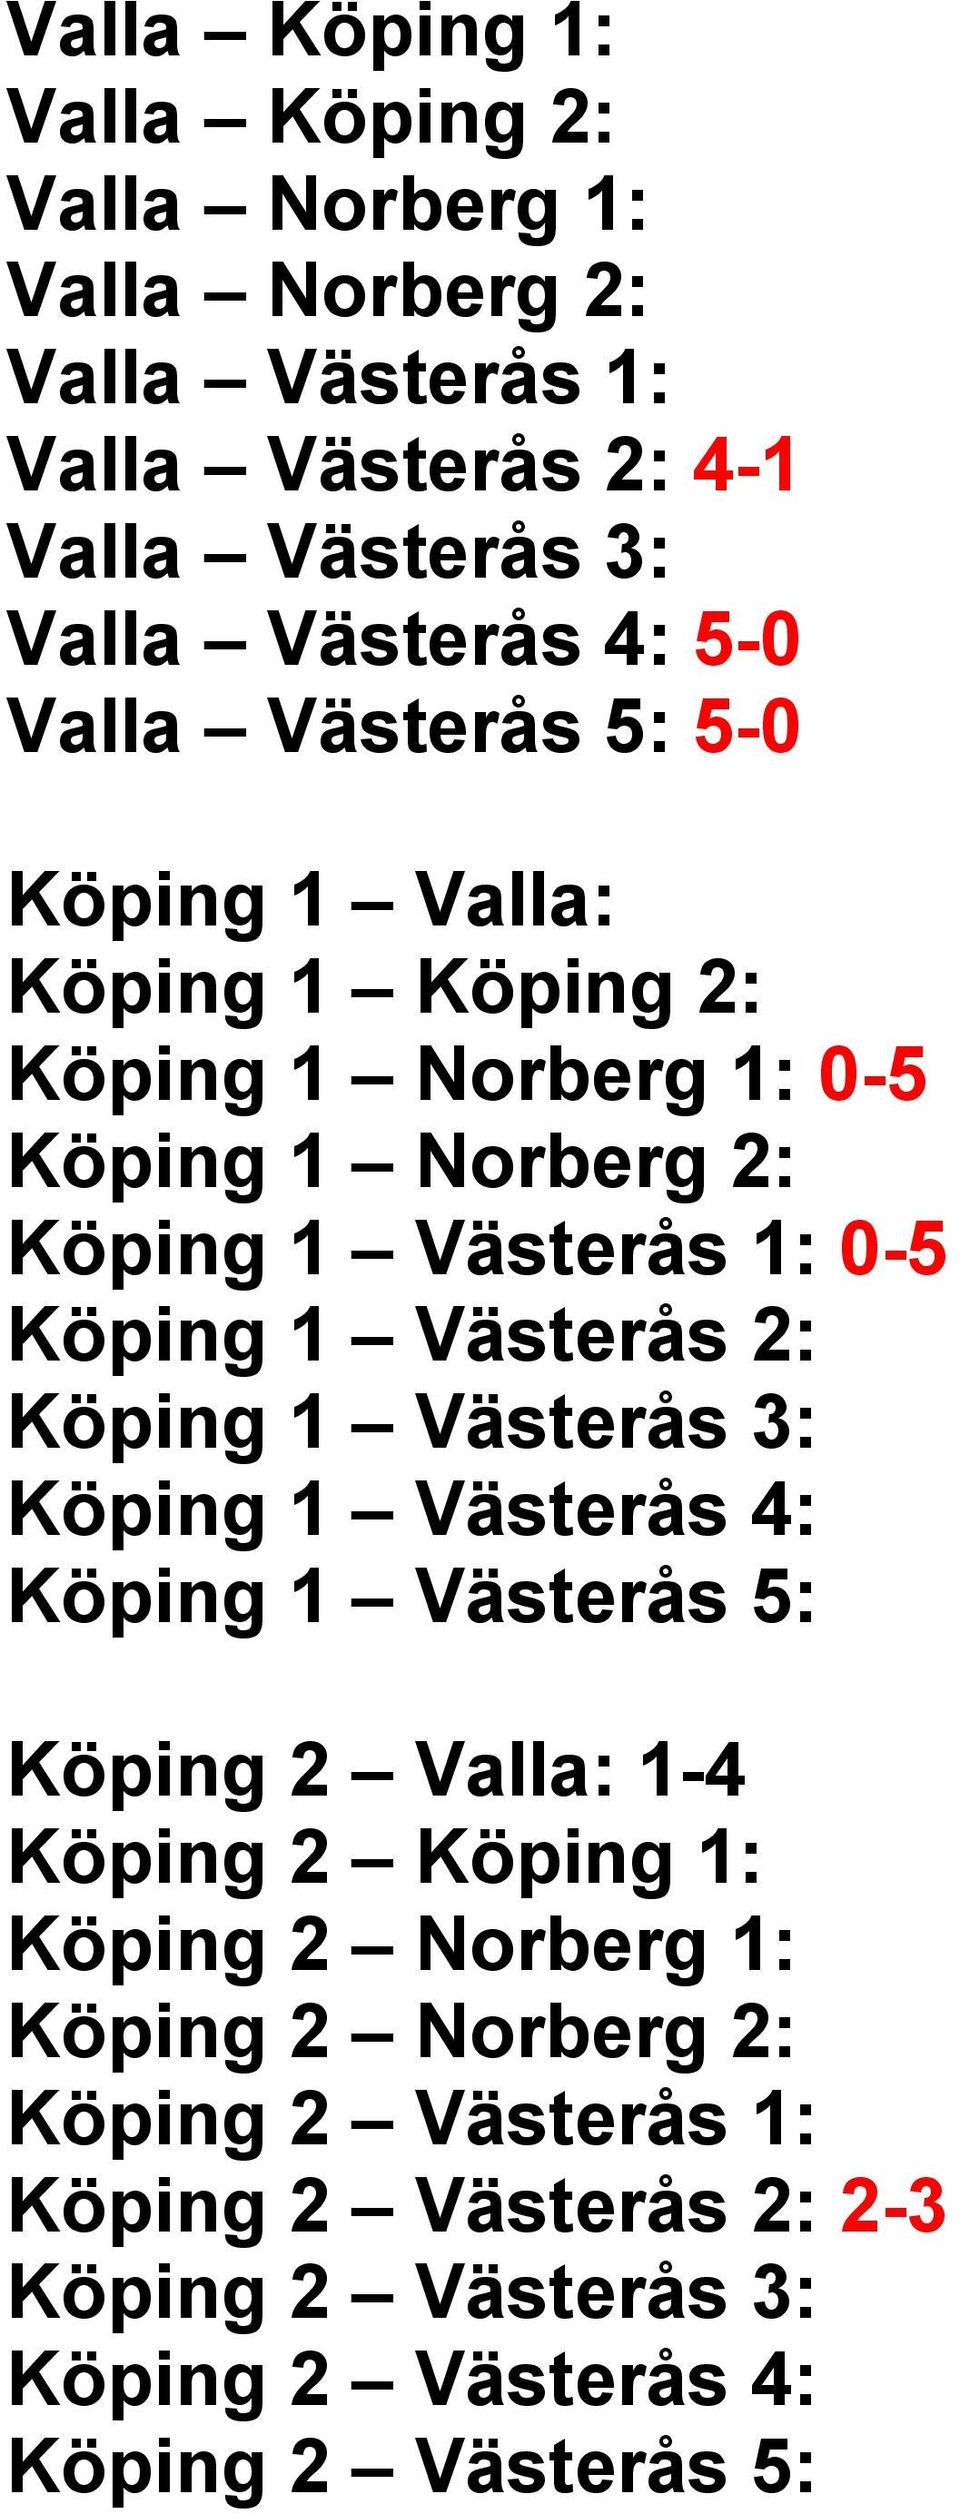 1: 0-5 Köping 1 Västerås 2: Köping 1 Västerås 3: Köping 1 Västerås 4: Köping 1 Västerås 5: Köping 2 Valla: 1-4 Köping 2 Köping 1: